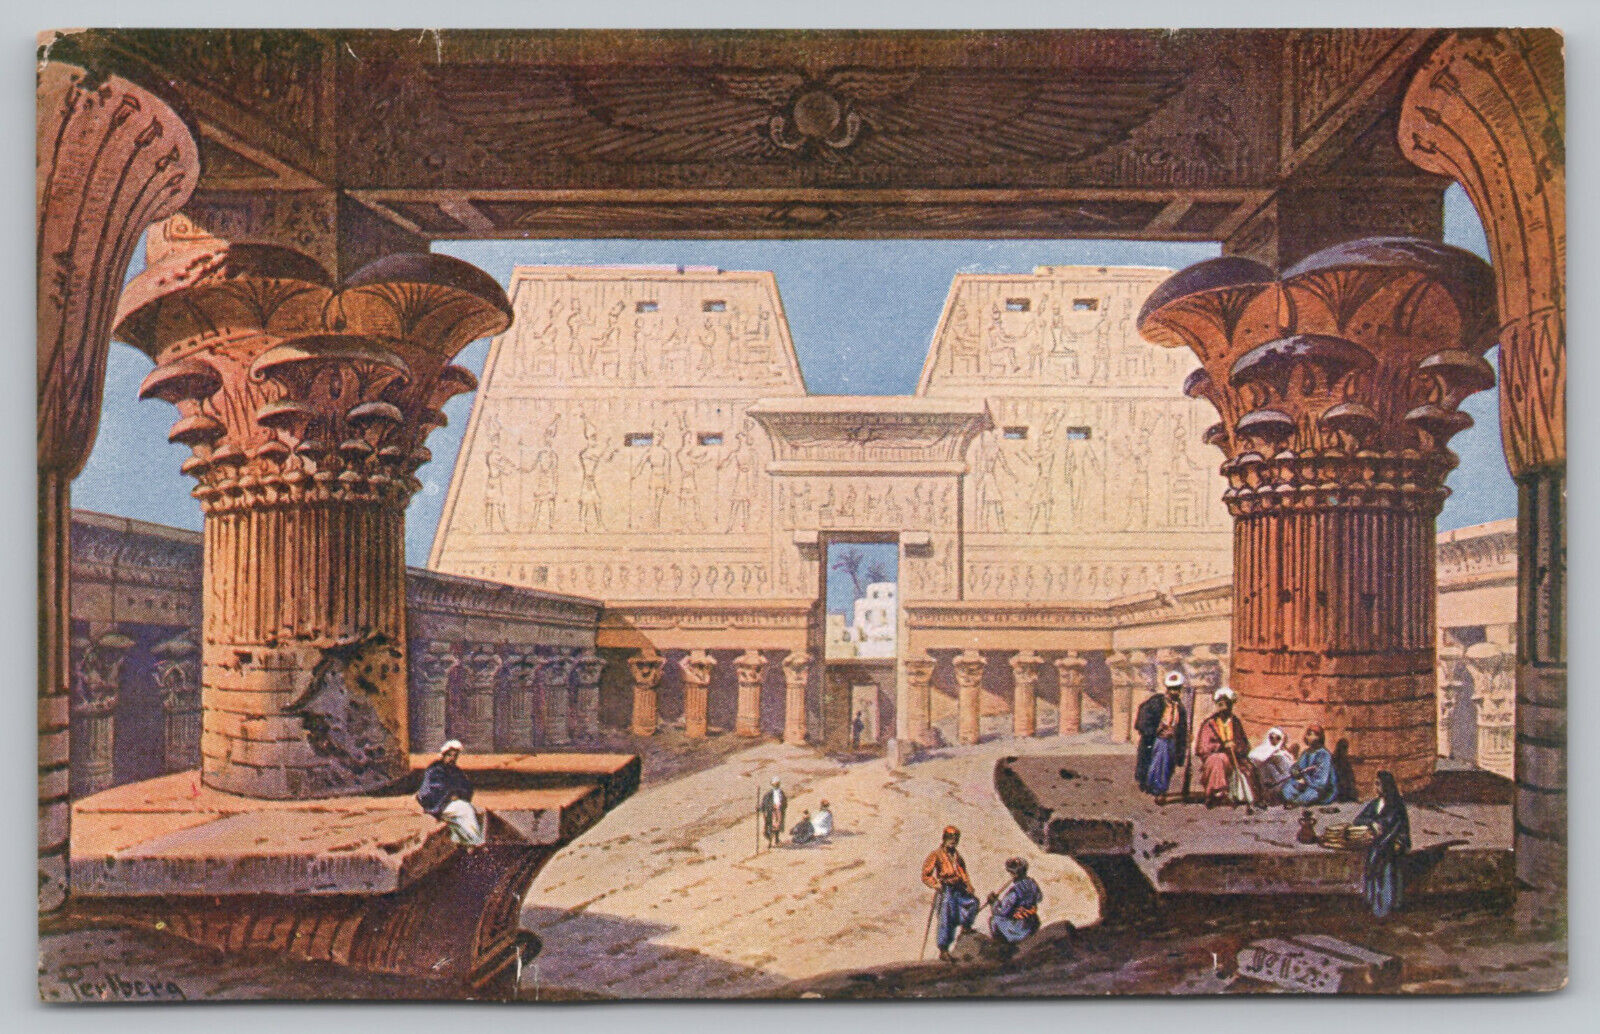 Edfu Egypt - Temple of Edfu - Artist Signed F. Perlberg - Postcard - c1912-14